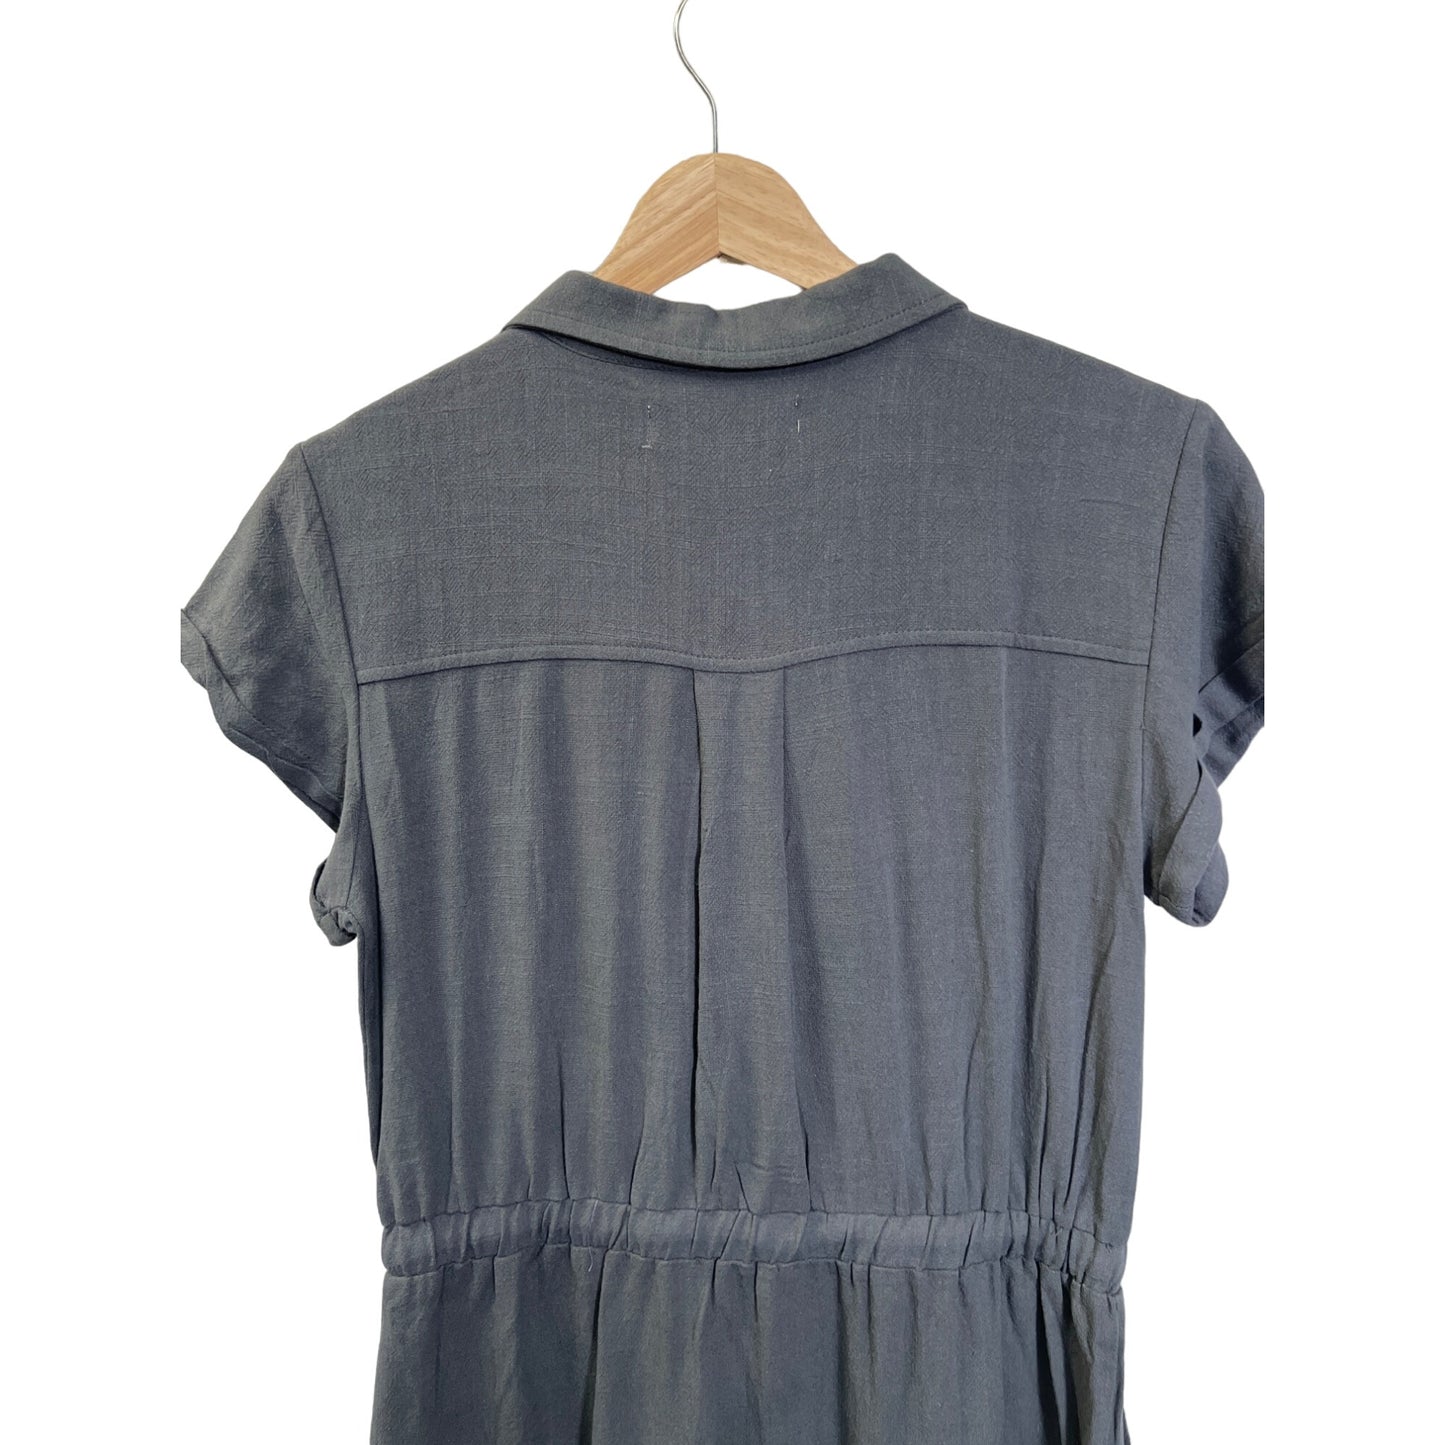 Thread & Supply Gray Linen Short Sleeve Shirt Dress